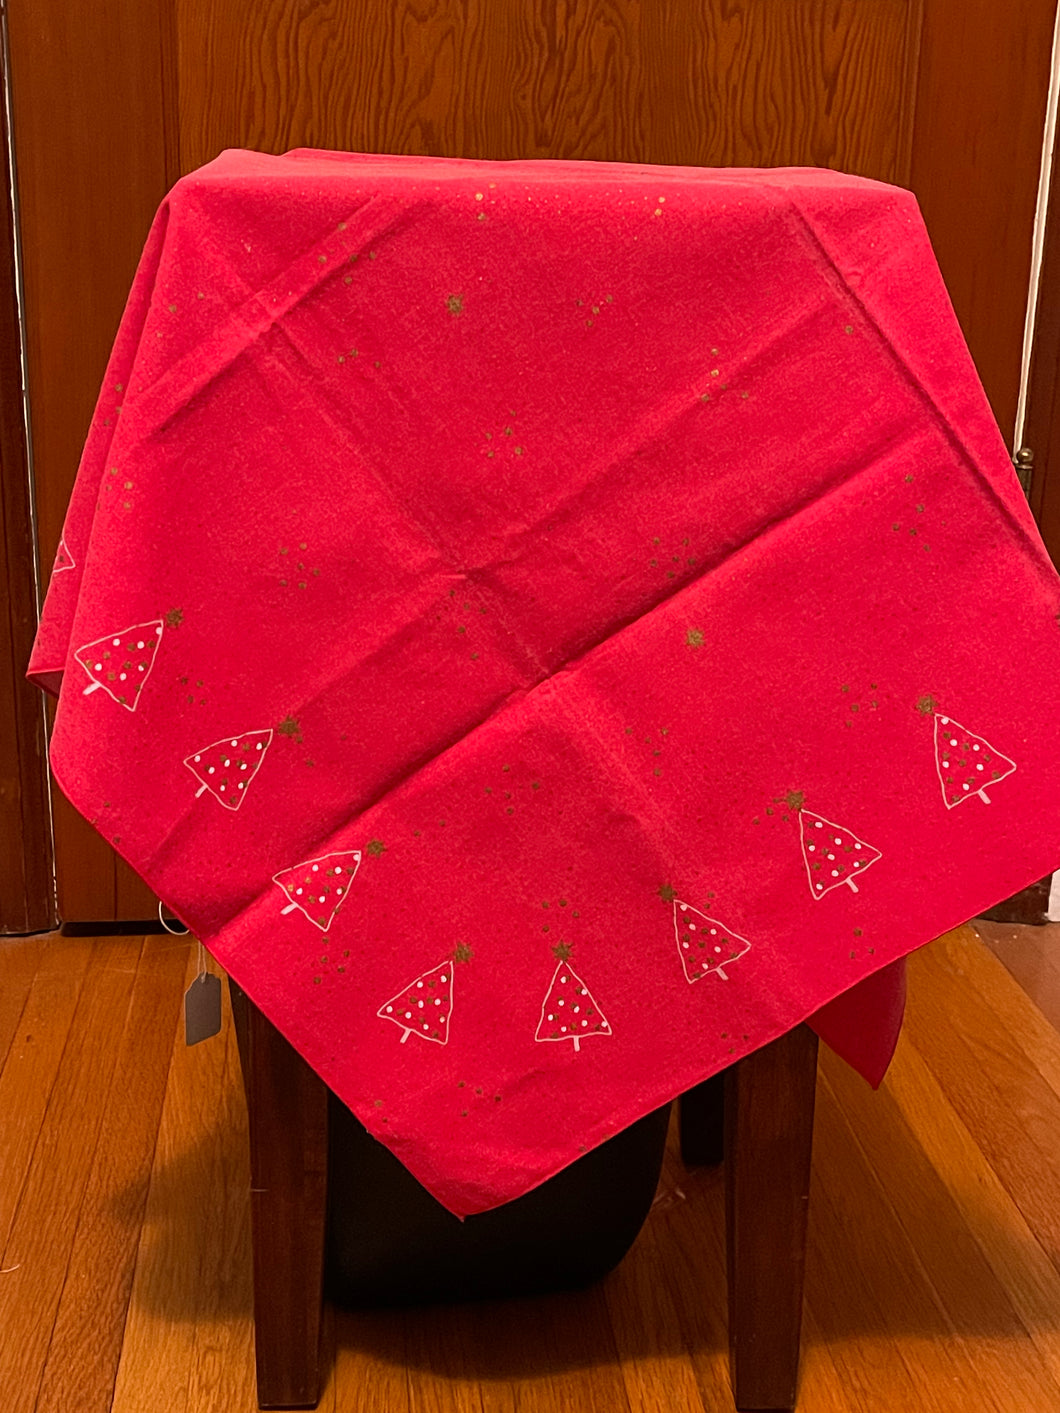 Vintage Christmas tablecloth